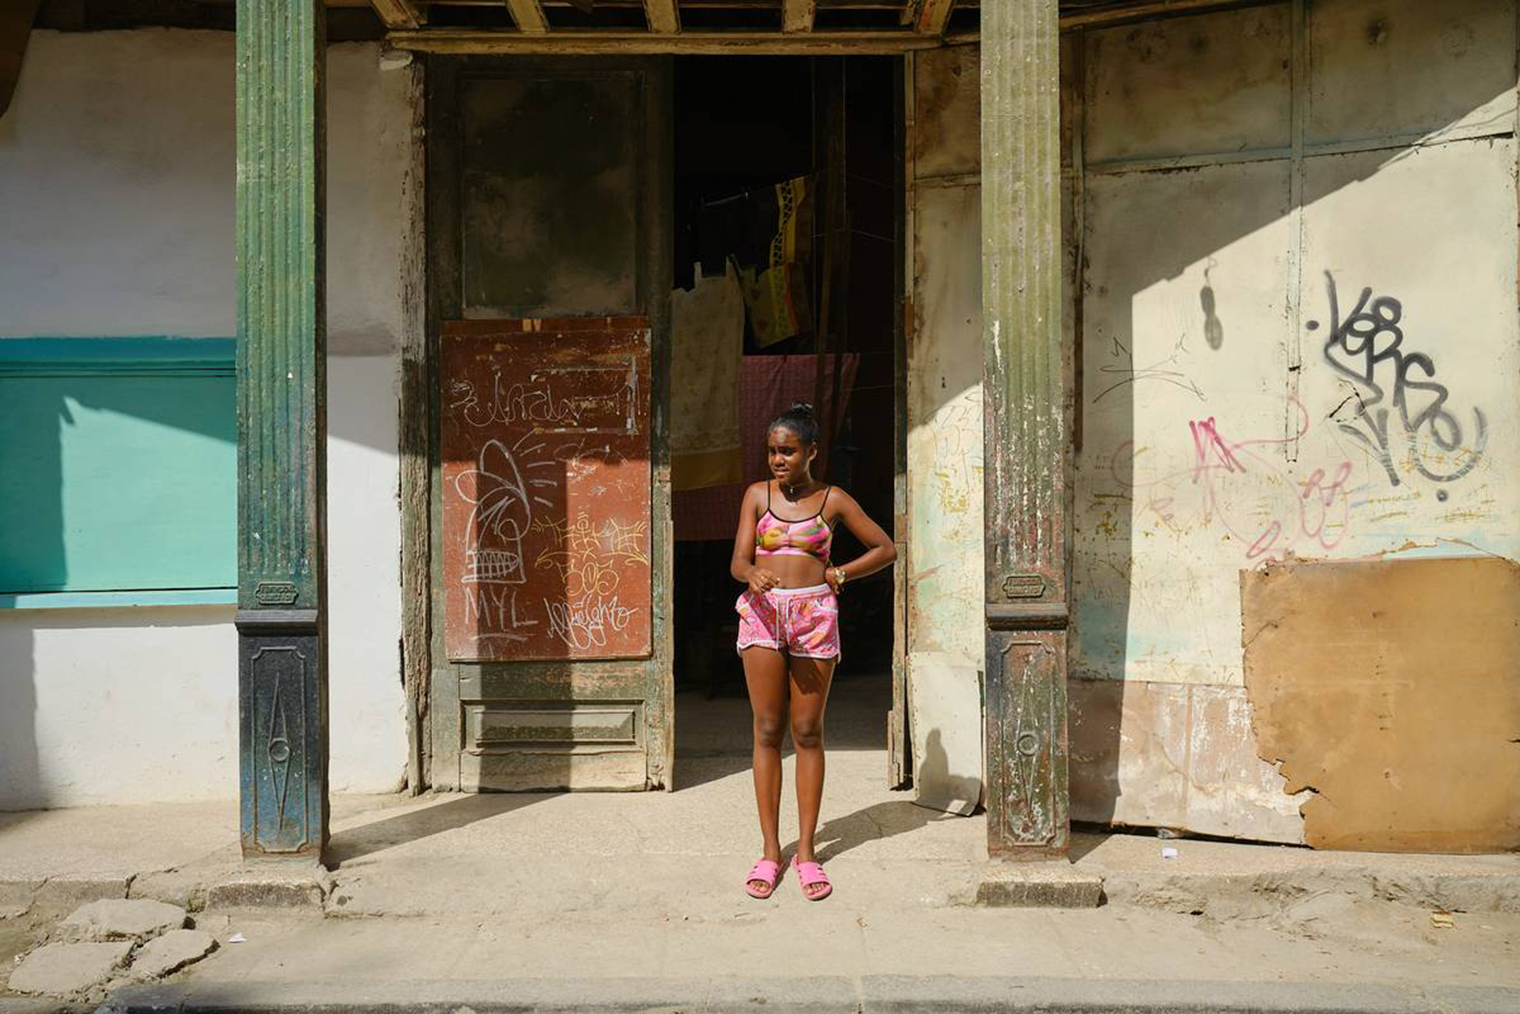 За два дня прогулок по Старой Гаване я увидел только одну детскую площадку. Большинство детей проводят досуг непосредственно на улице возле домов